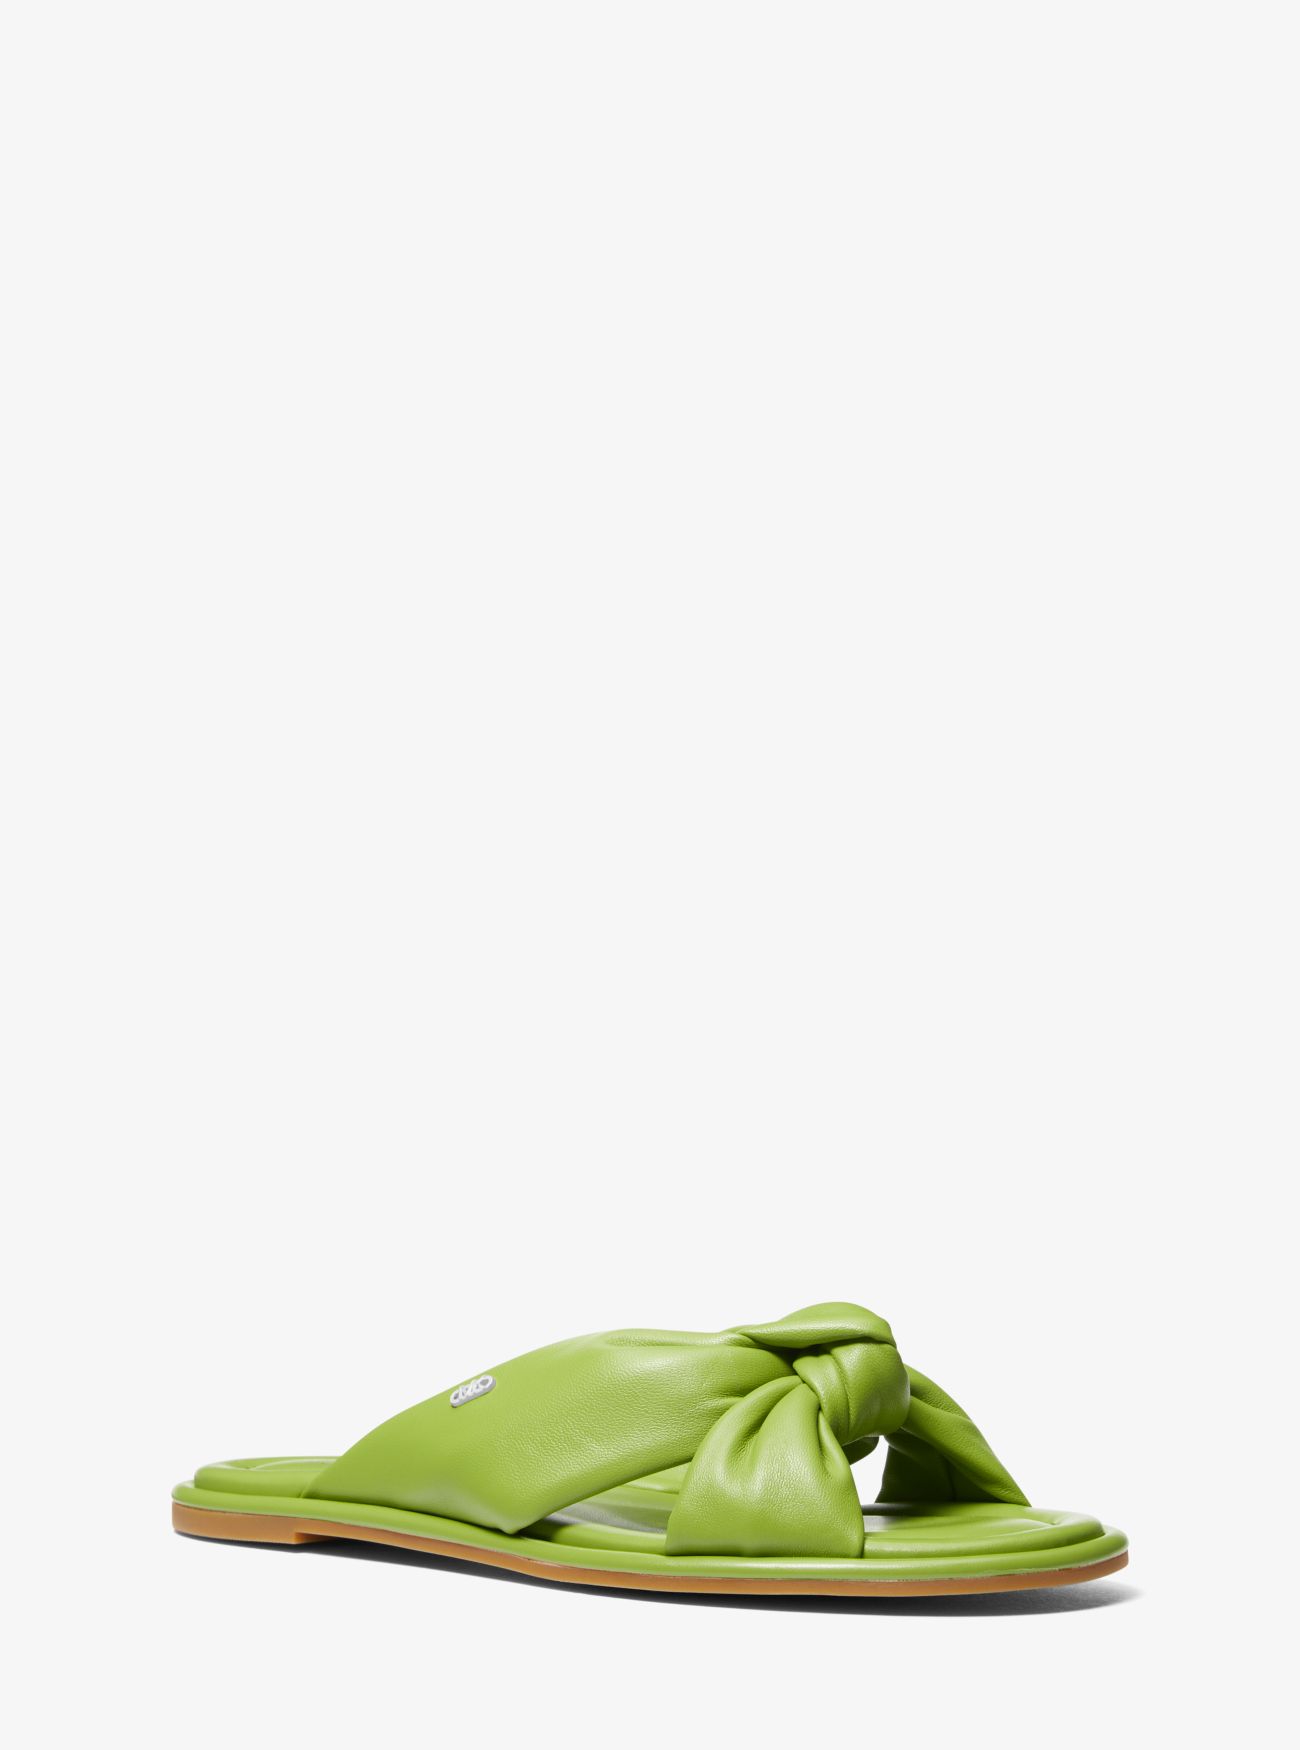 MK Elena Leather Slide Sandal - Green - Michael Kors